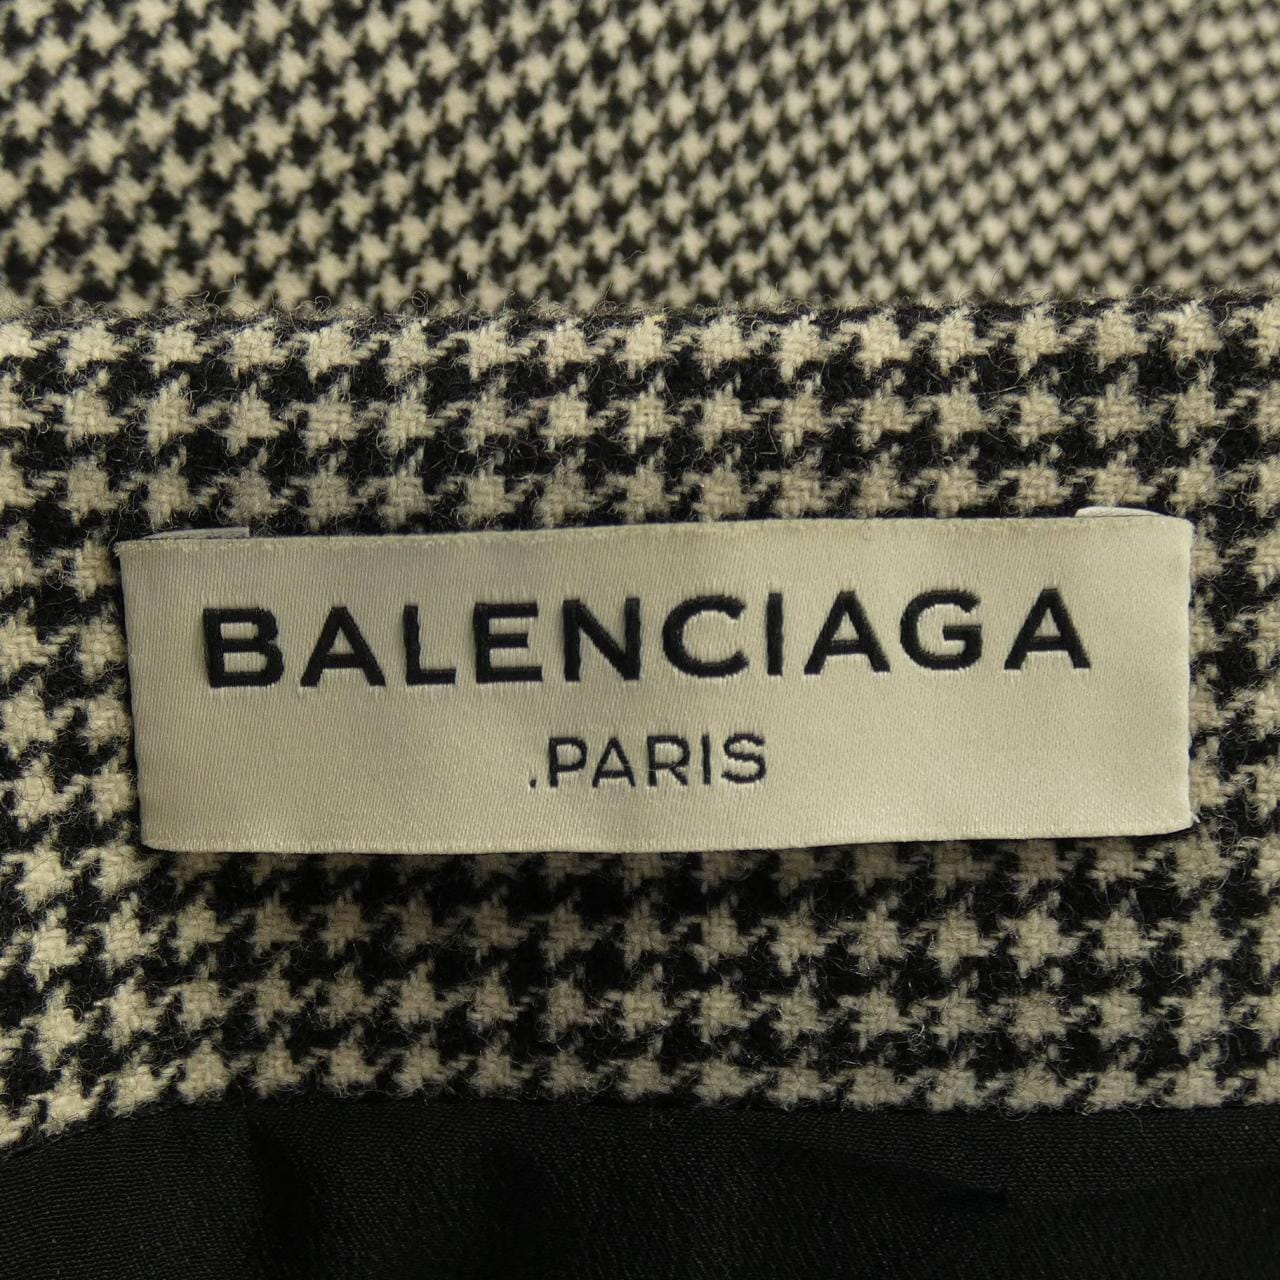 BALENCIAGA skirt